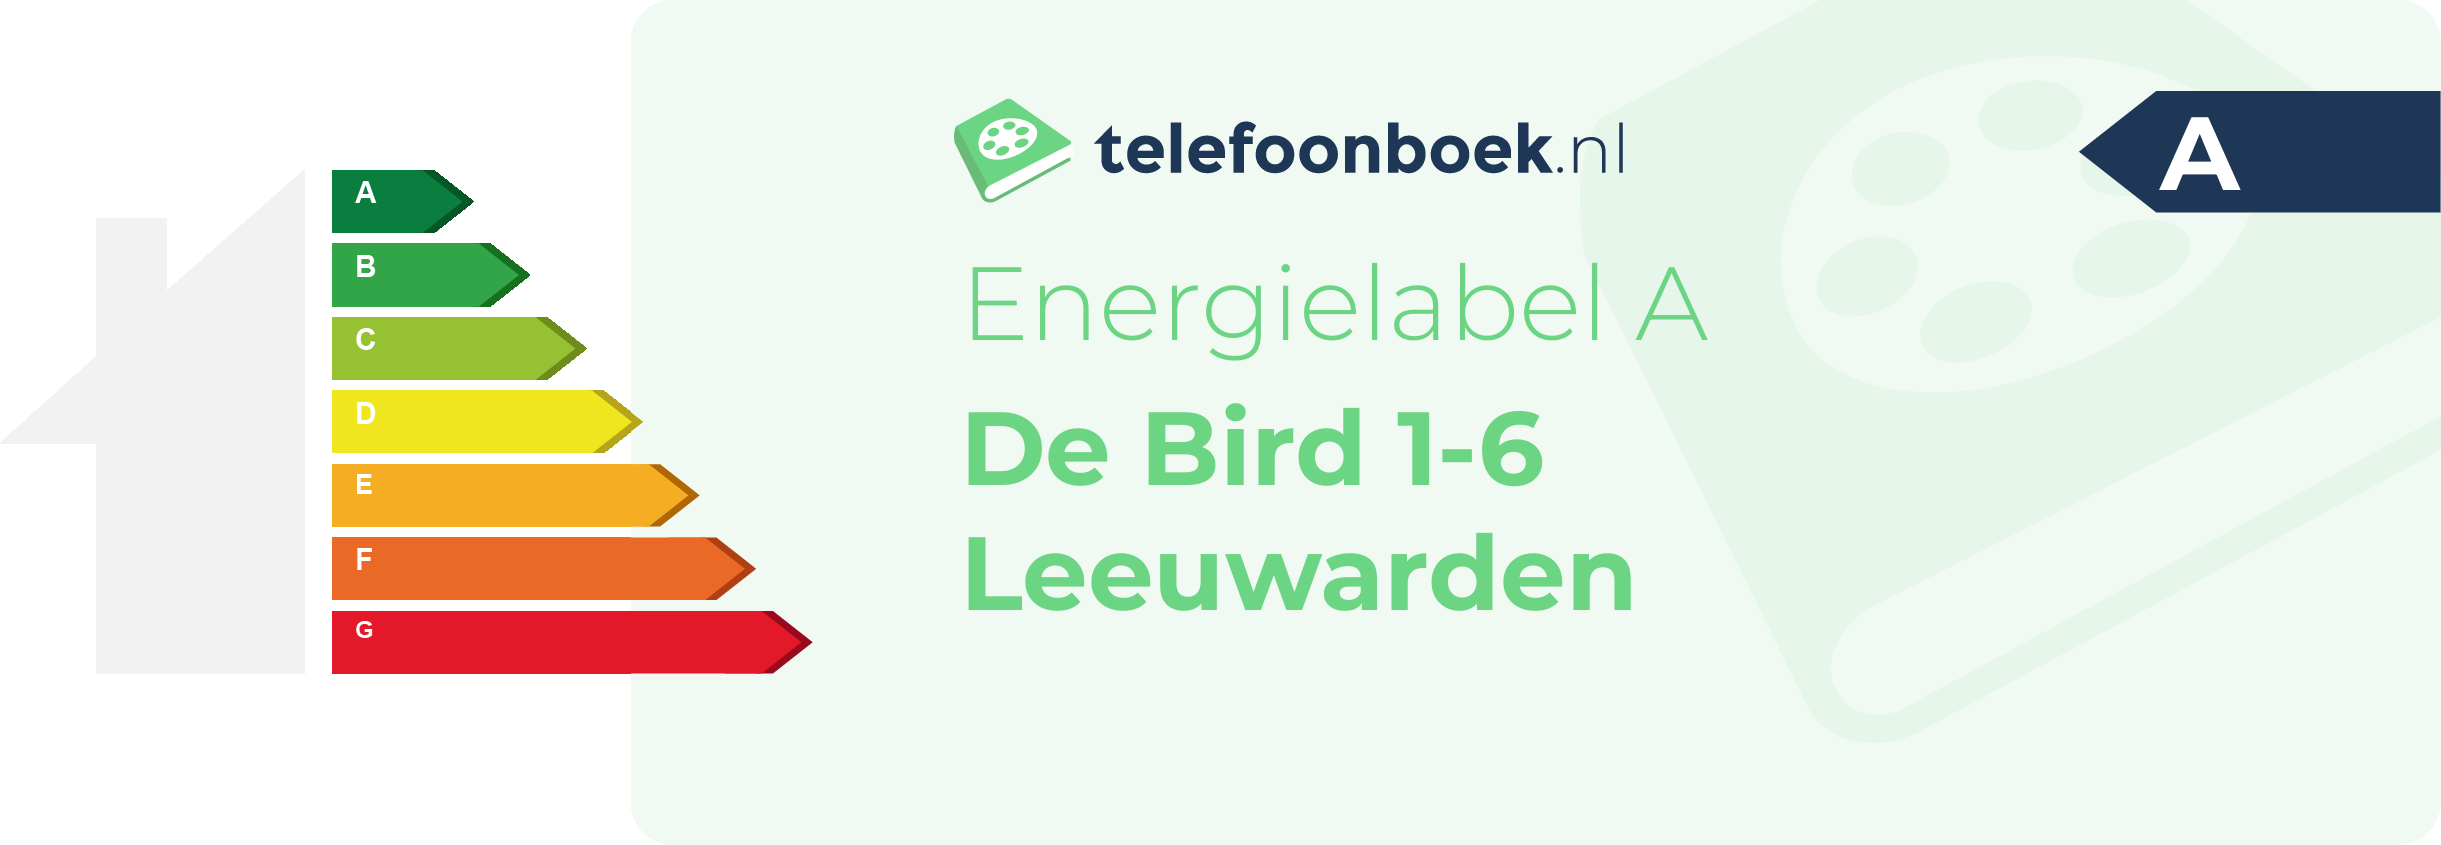 Energielabel De Bird 1-6 Leeuwarden